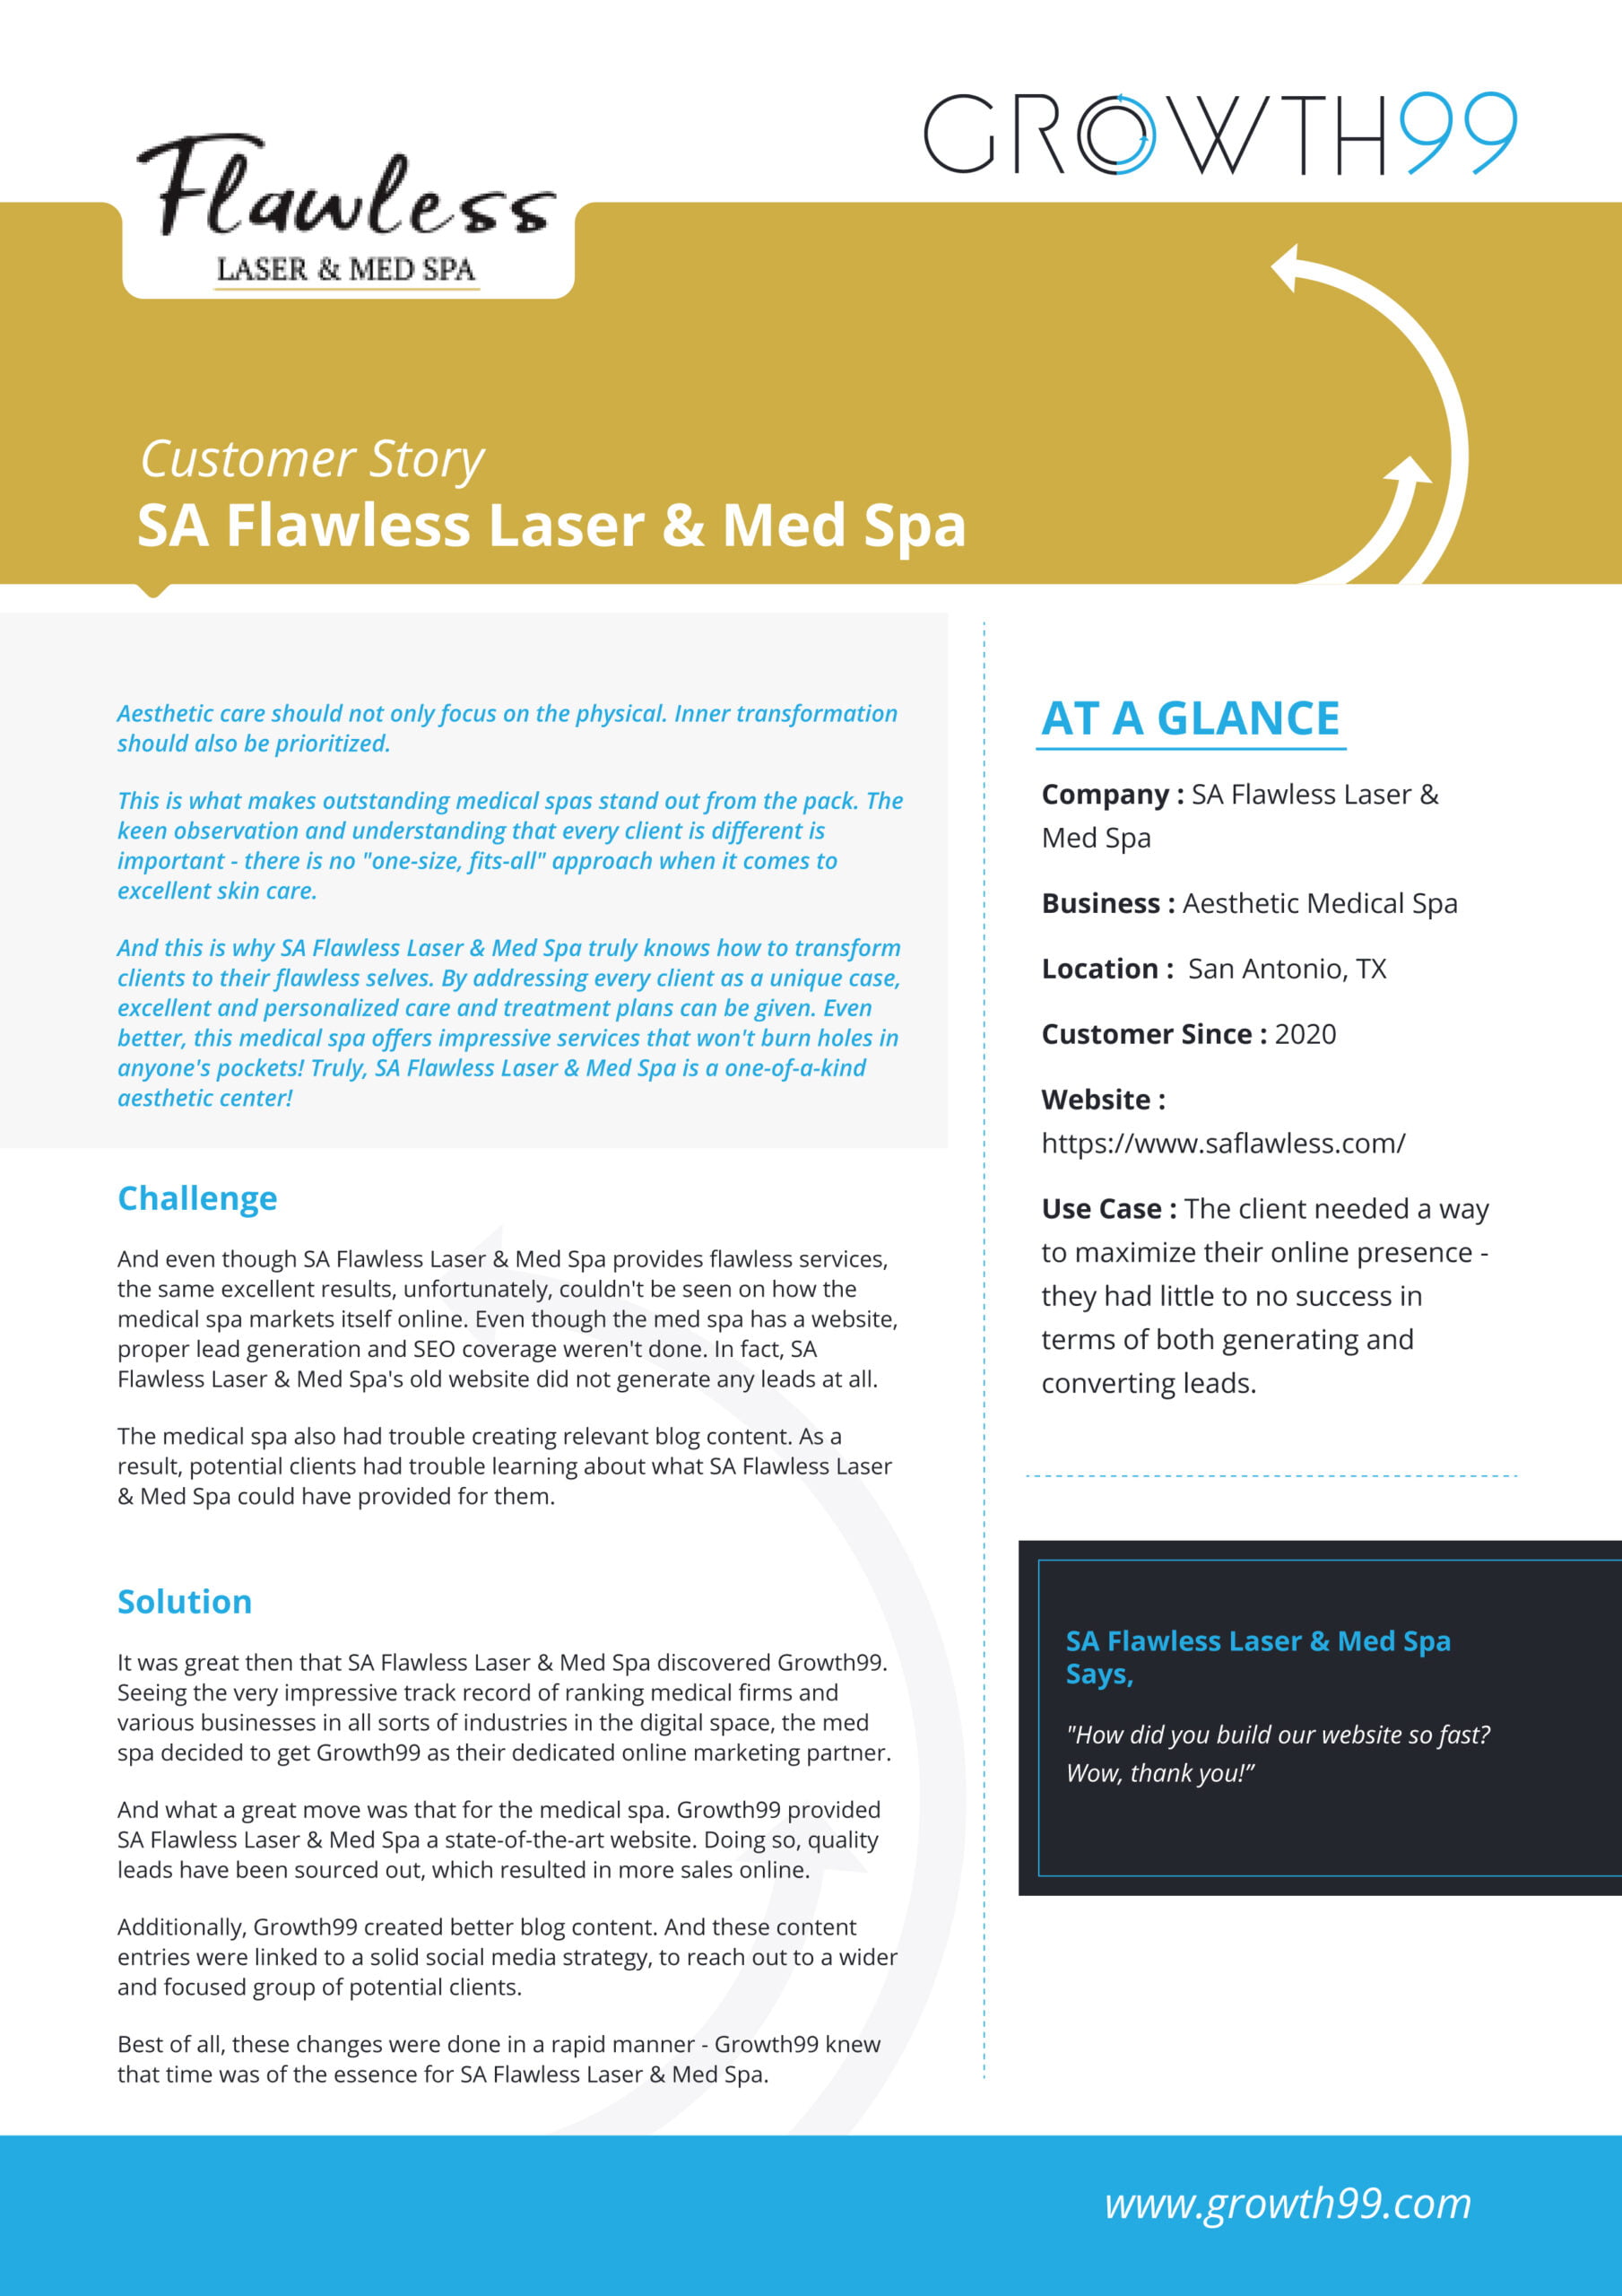 SA Flawless Laser & Med Spa